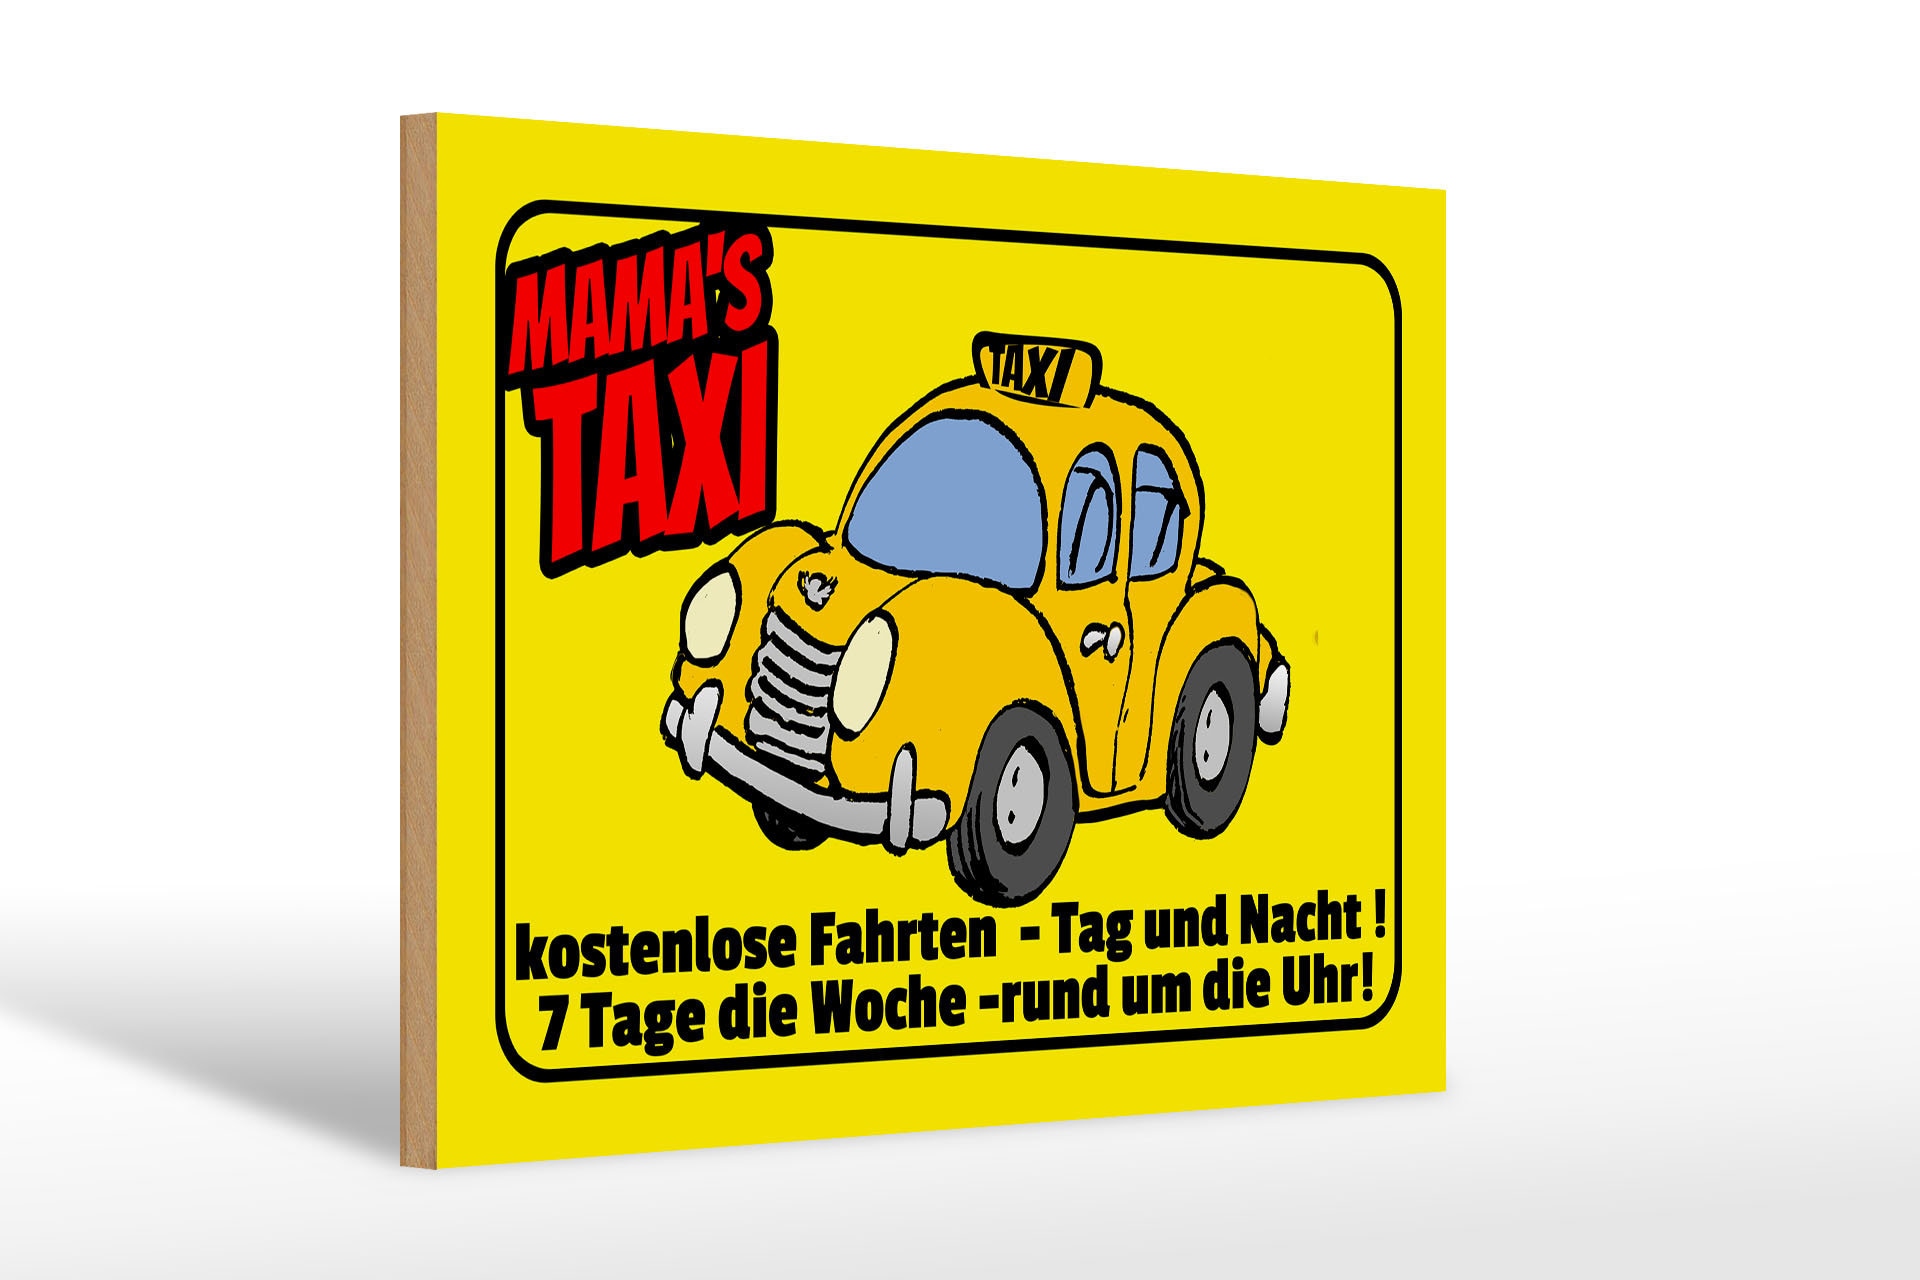 Personalisiertes Taxi-Autoschild, individuelles Taxi-Schild, fügen Sie  Namen hinzu, um Ihr eigenes Taxi-Autoschild zu erstellen